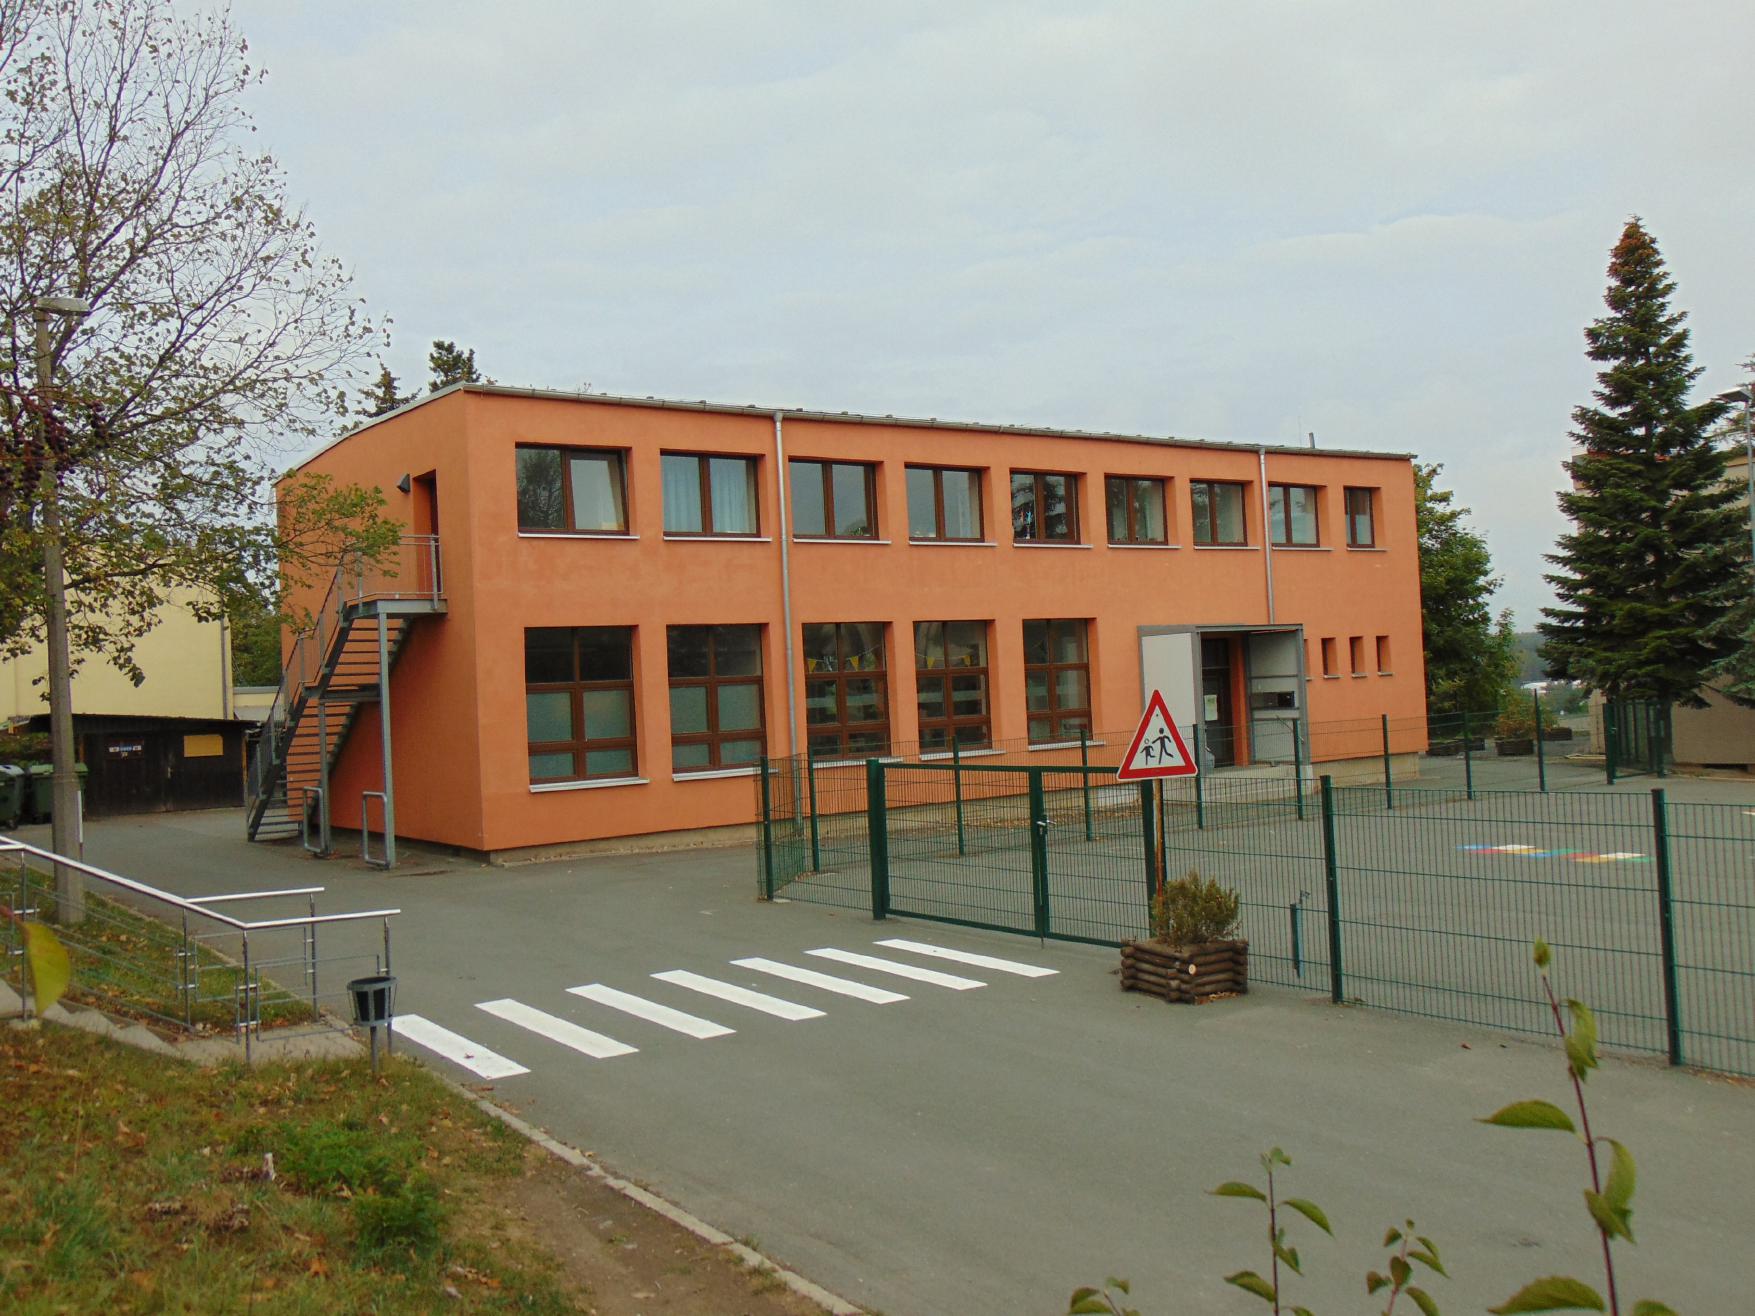 Das Bild zeigt ein oranges Gebäude, umgeben von Grünflächen.